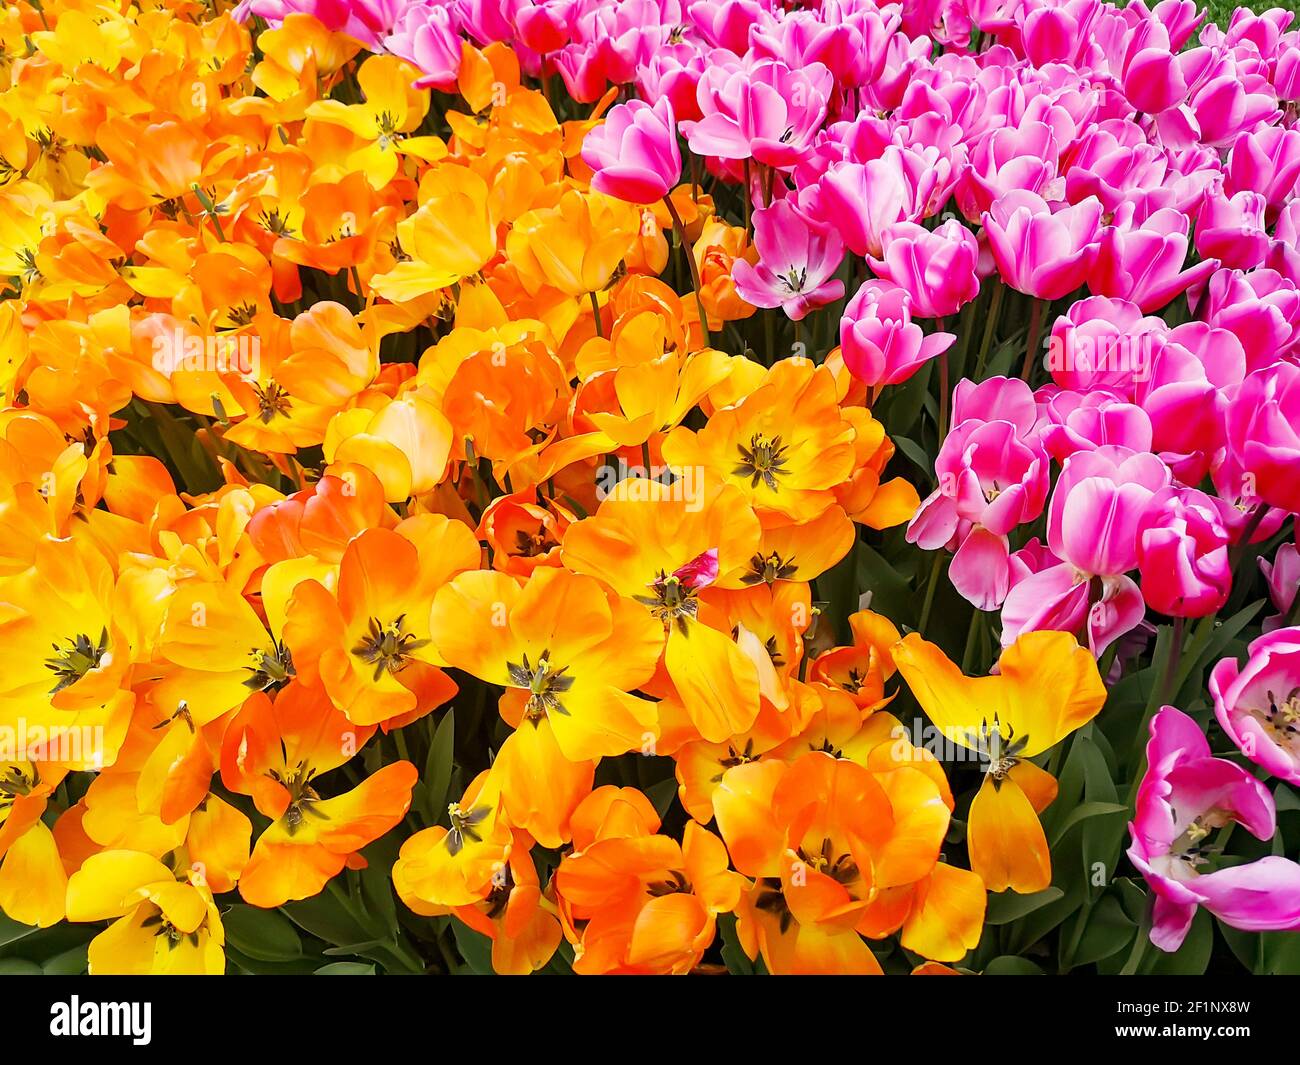 Nombreux tulipes romantiques et de saison. Un champ de fleurs orange et roses. Bouquet cadeau de printemps. Magnifique fond naturel à la lumière du jour Banque D'Images